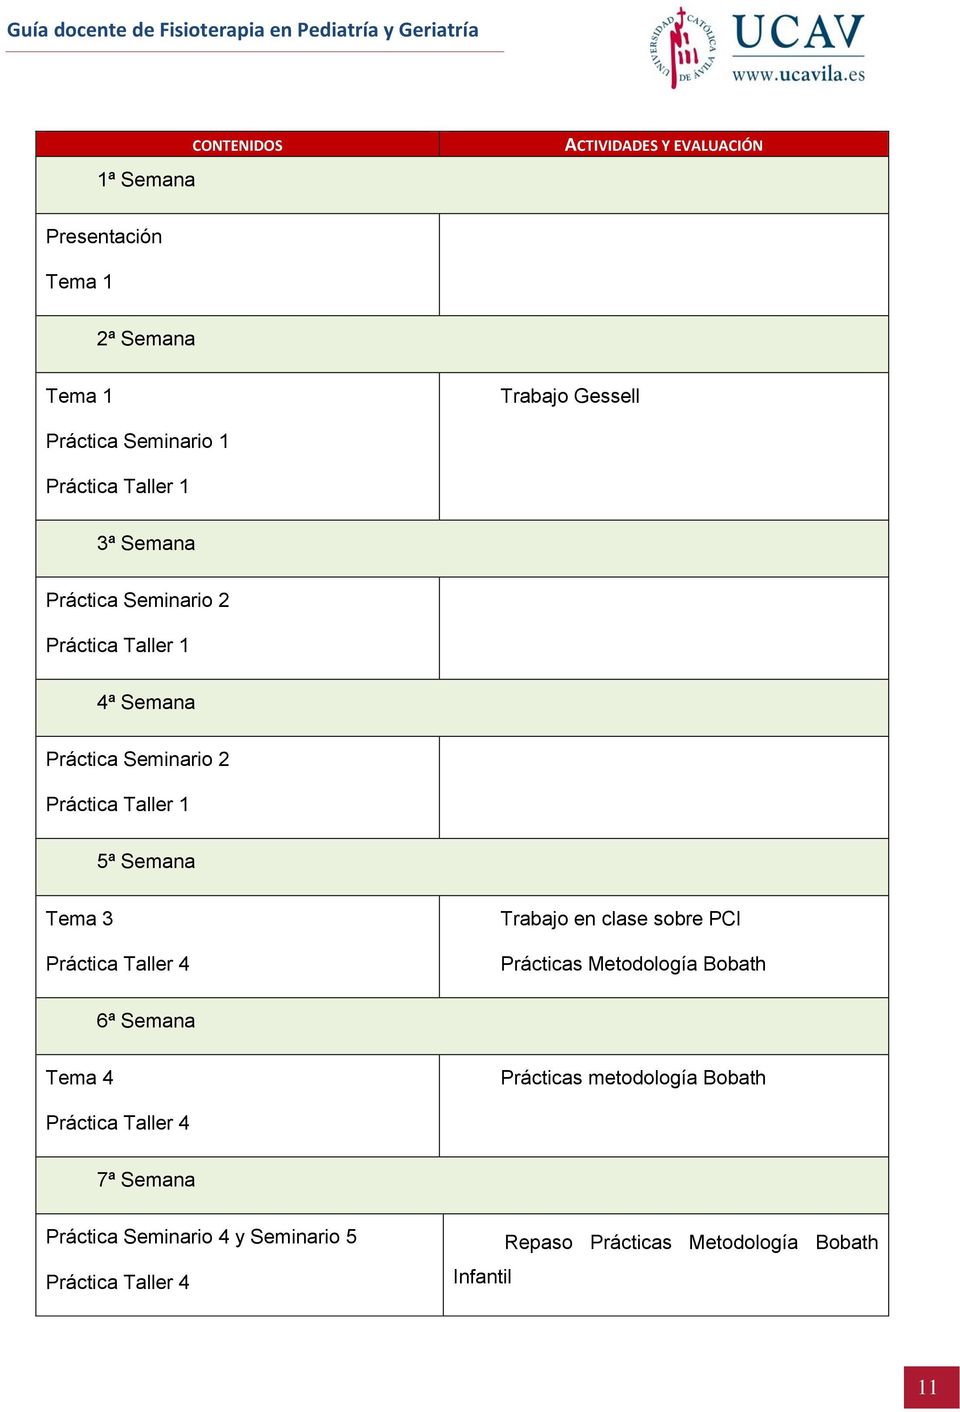 Tema 3 Práctica Taller 4 Trabajo en clase sobre PCI Prácticas Metodología Bobath 6ª Semana Tema 4 Prácticas metodología